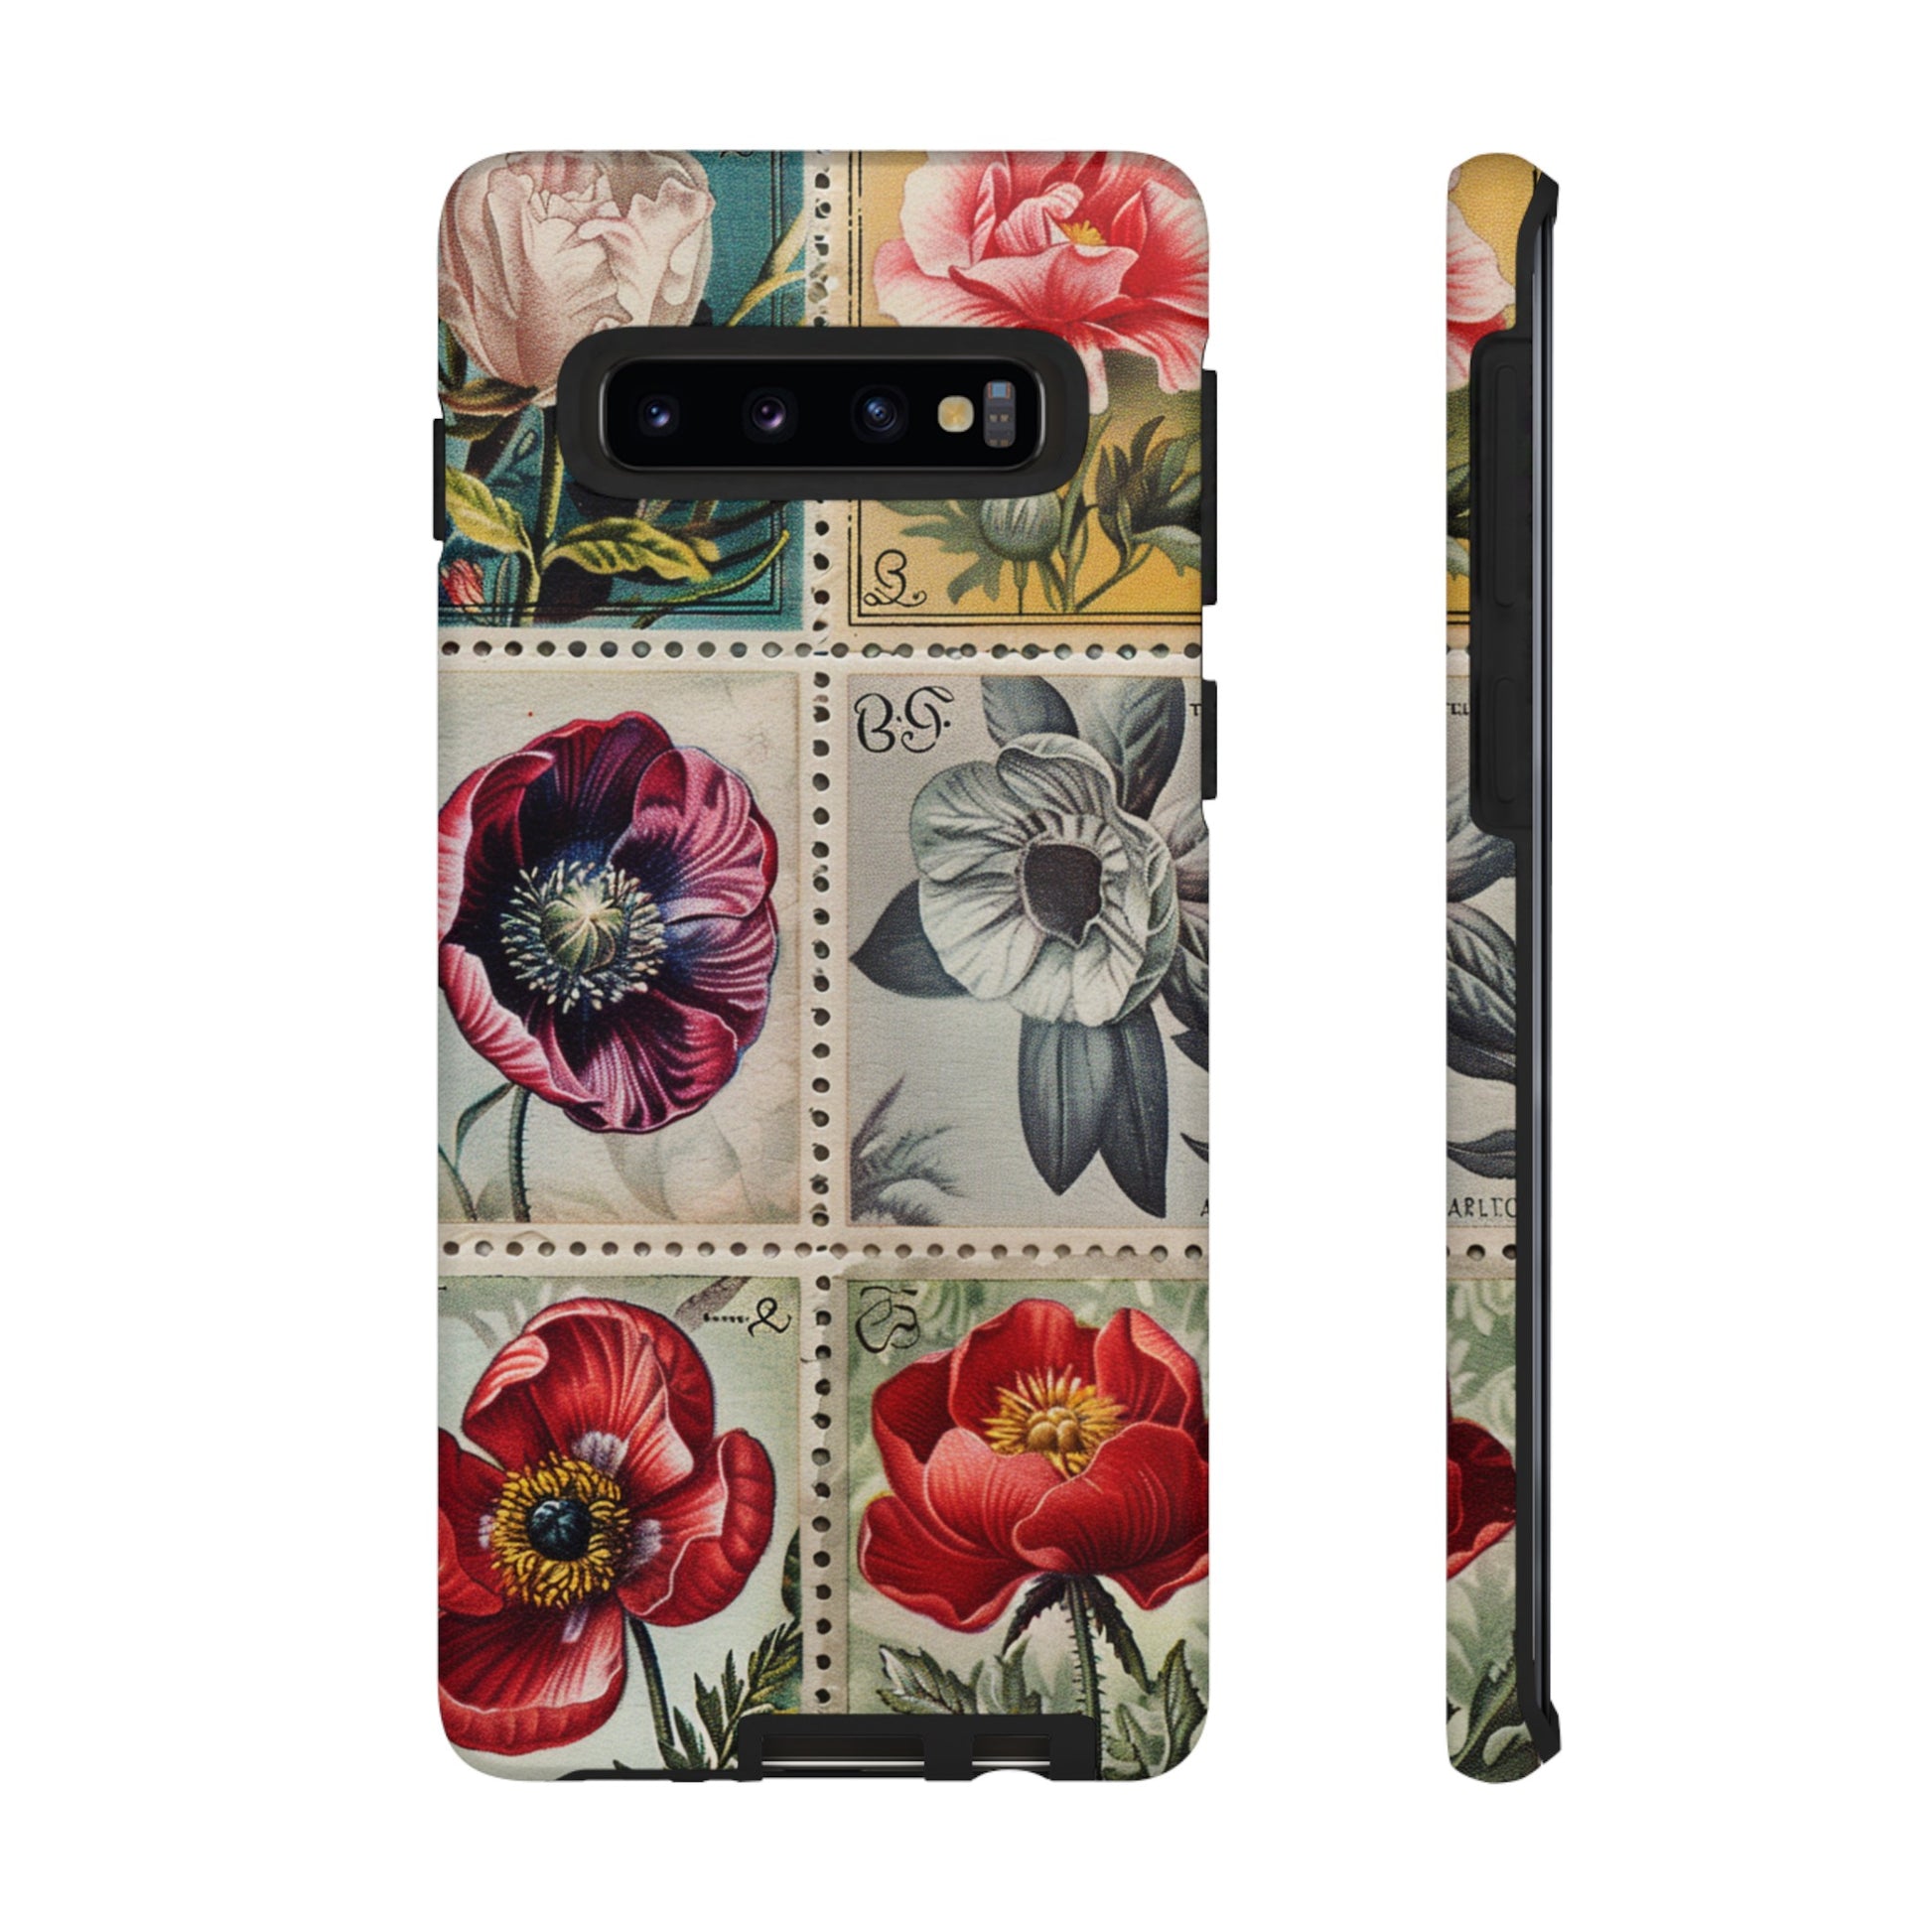 Elegant floral stamp phone case for Google Pixel